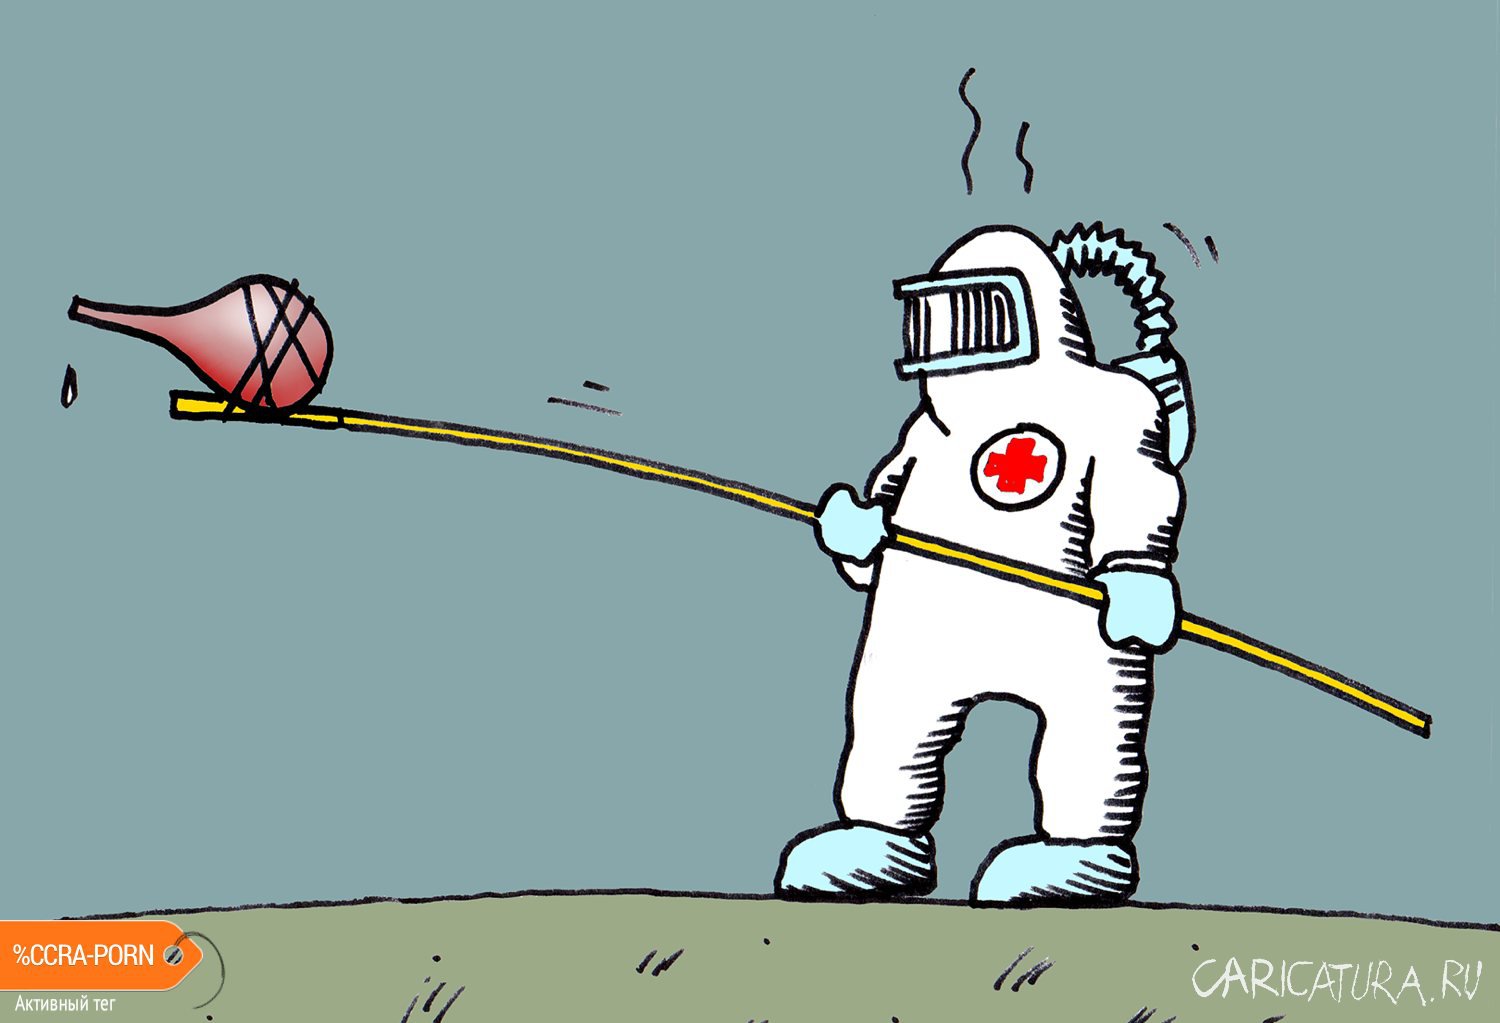 Карикатура "Решительные меры", Андрей Гоголев